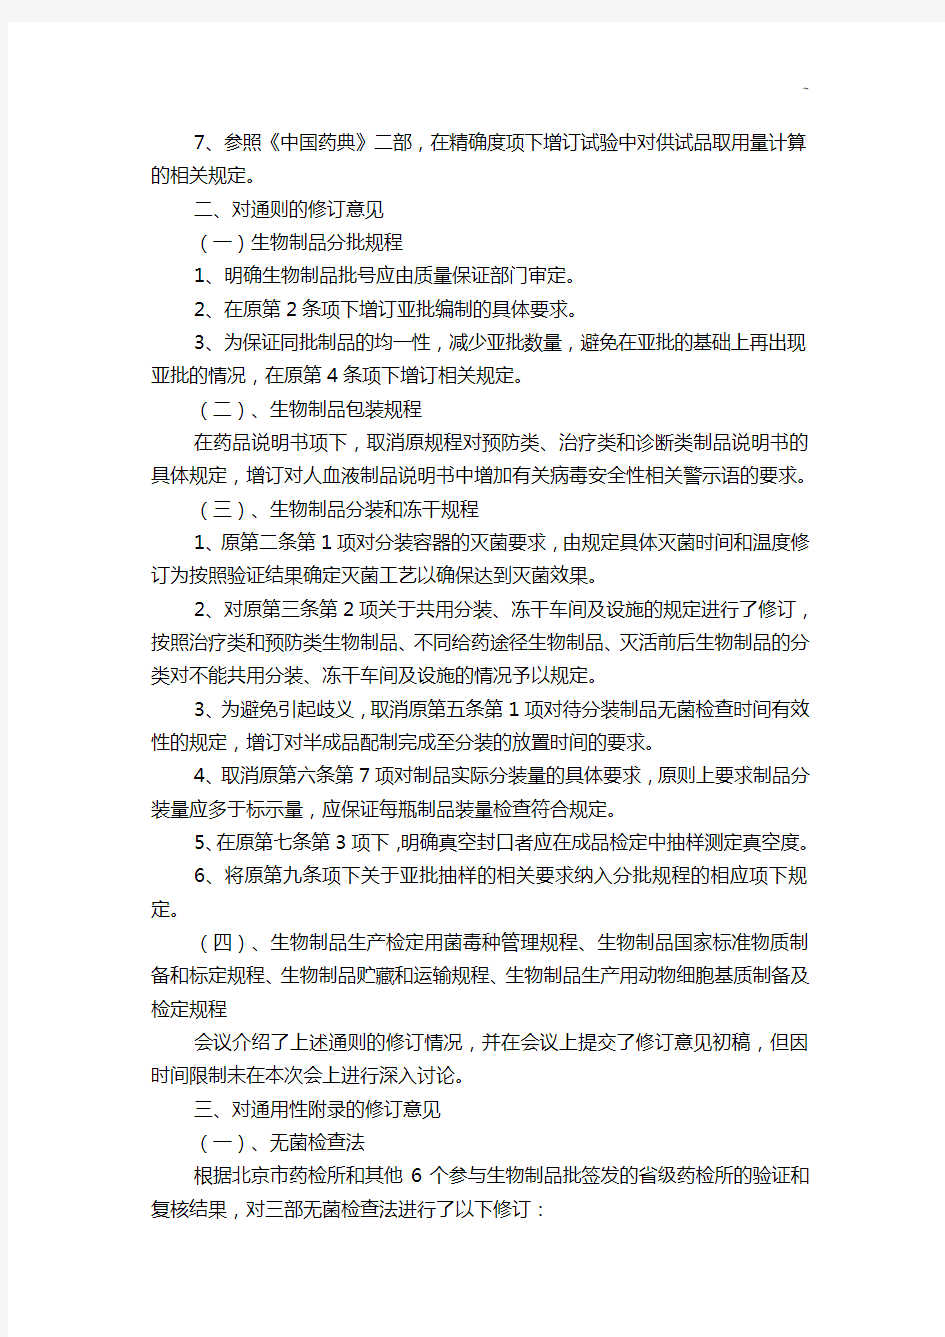 《中国药典》2010年出版三部